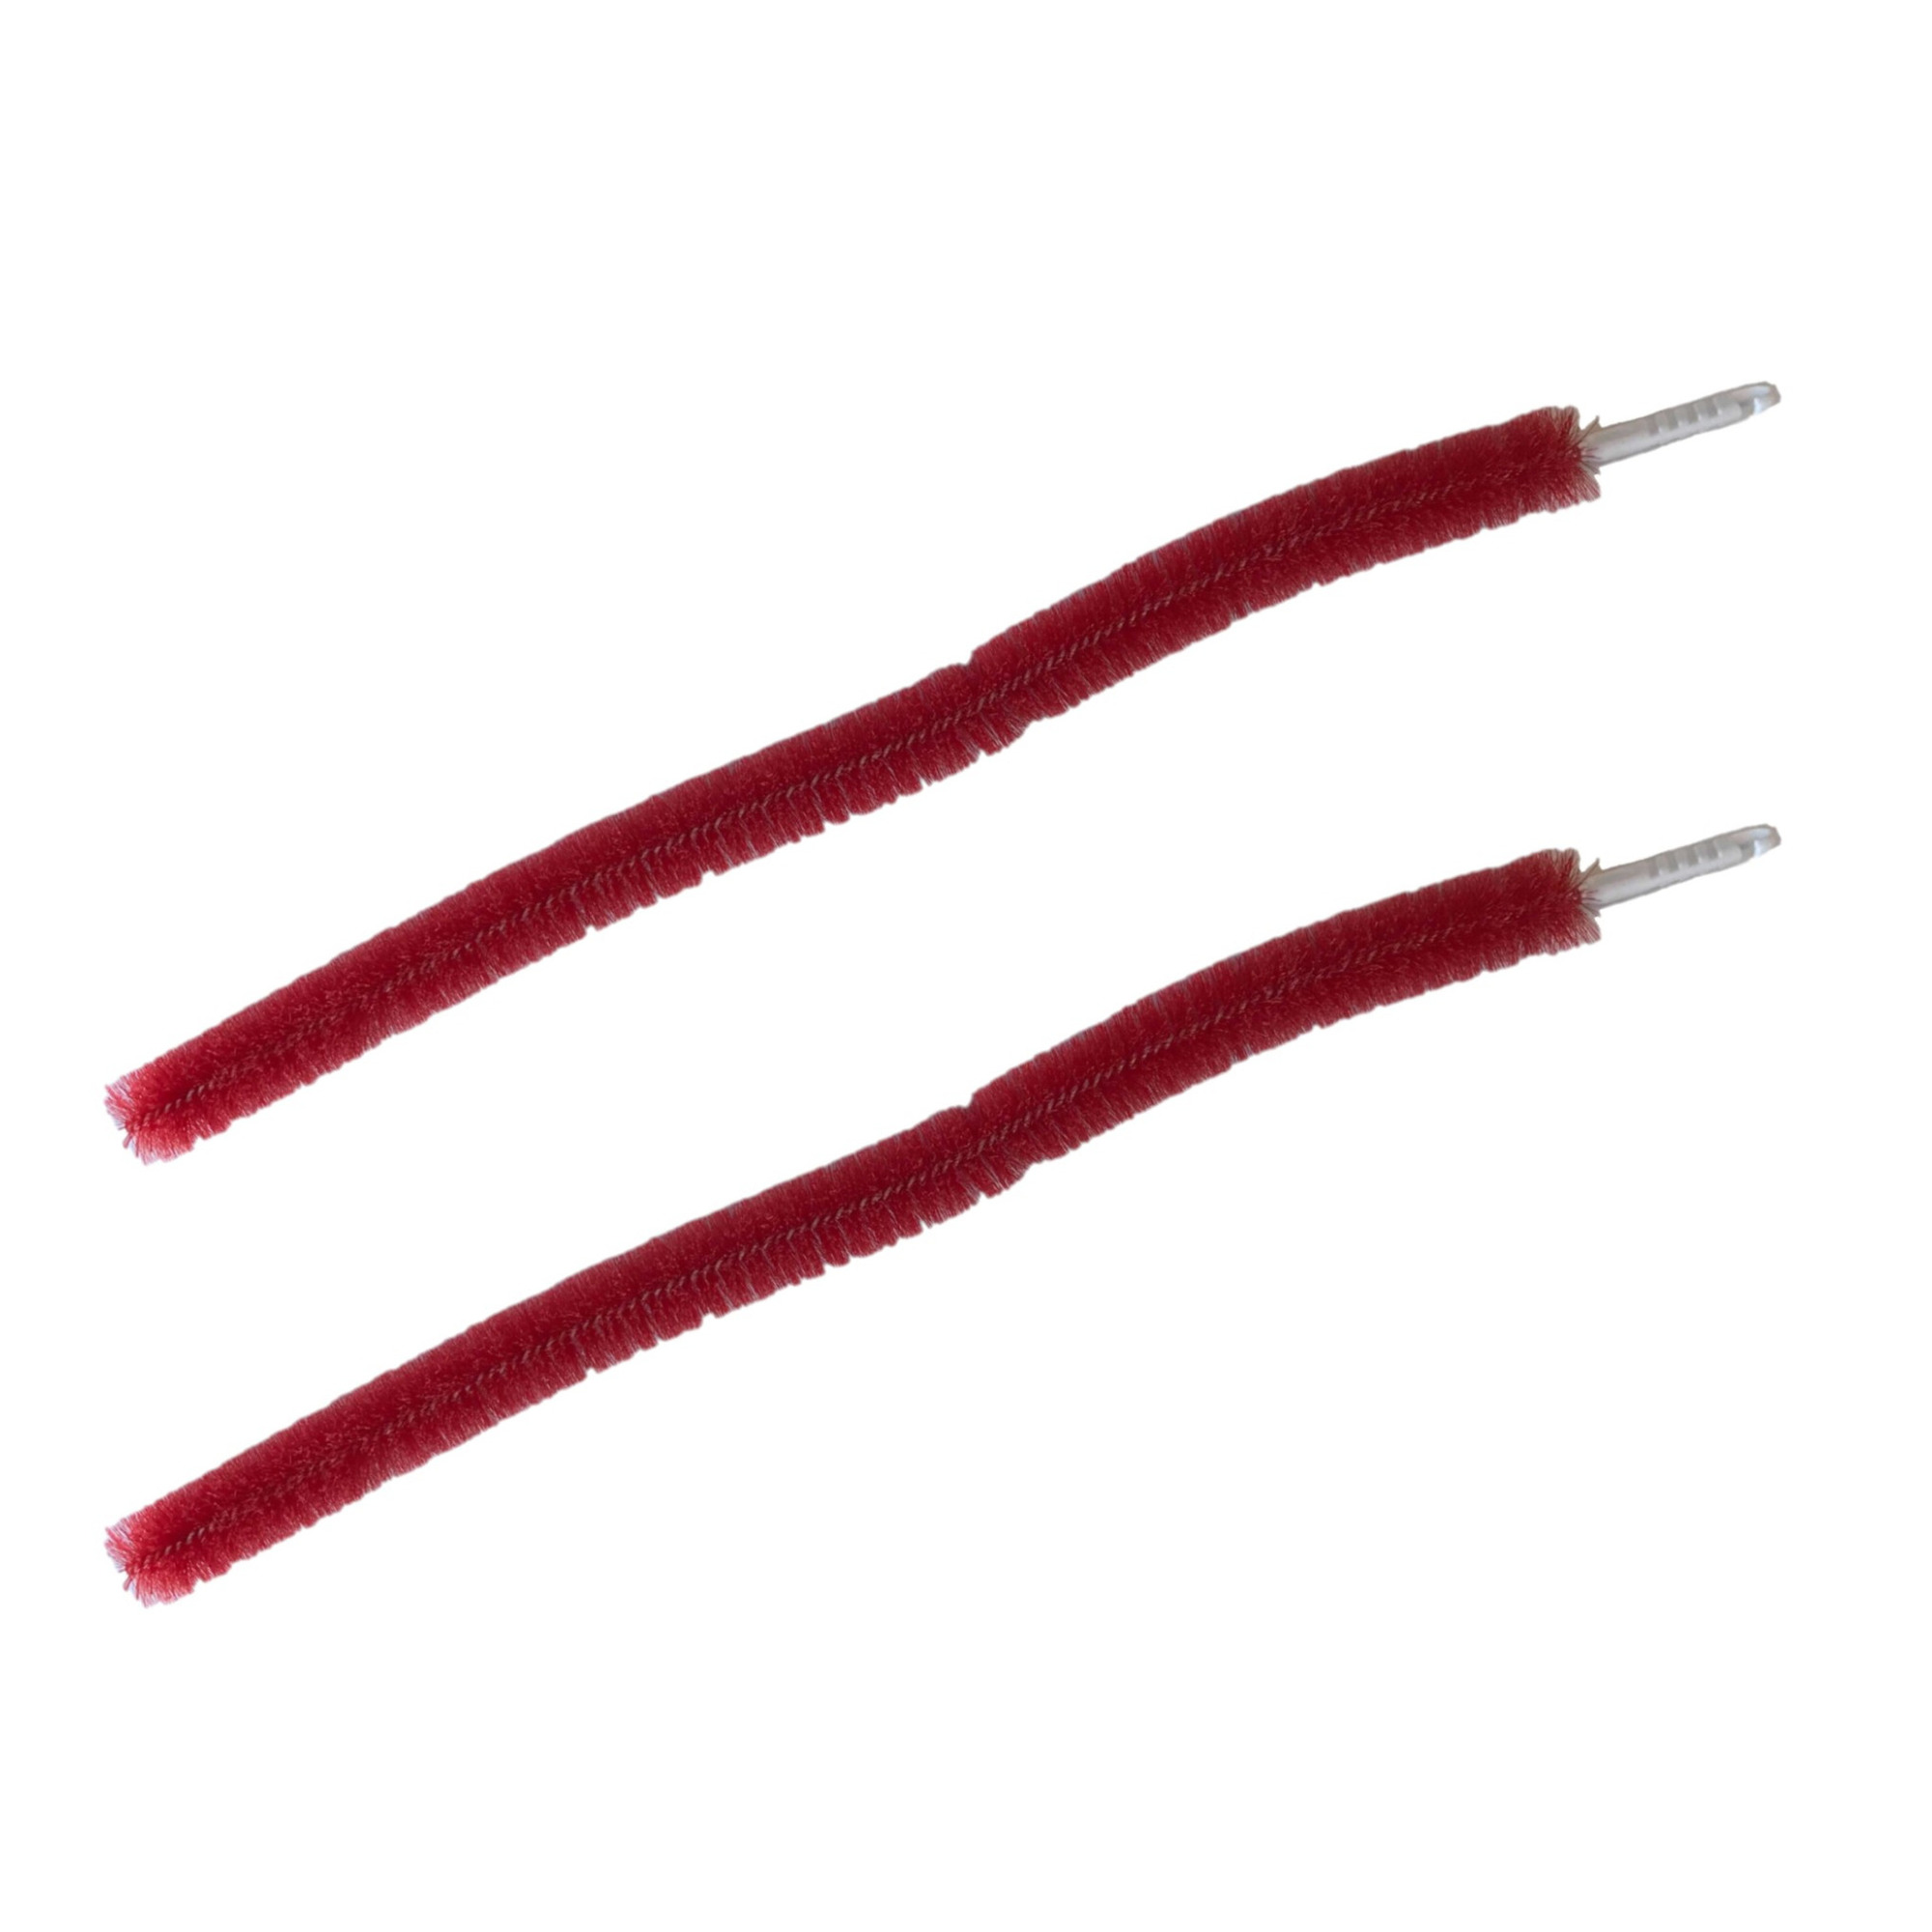 2x stuks kunststof radiatorborstels/verwarmingsborstels rood 92 cm - Schoonmaakborstel/rager verwarming